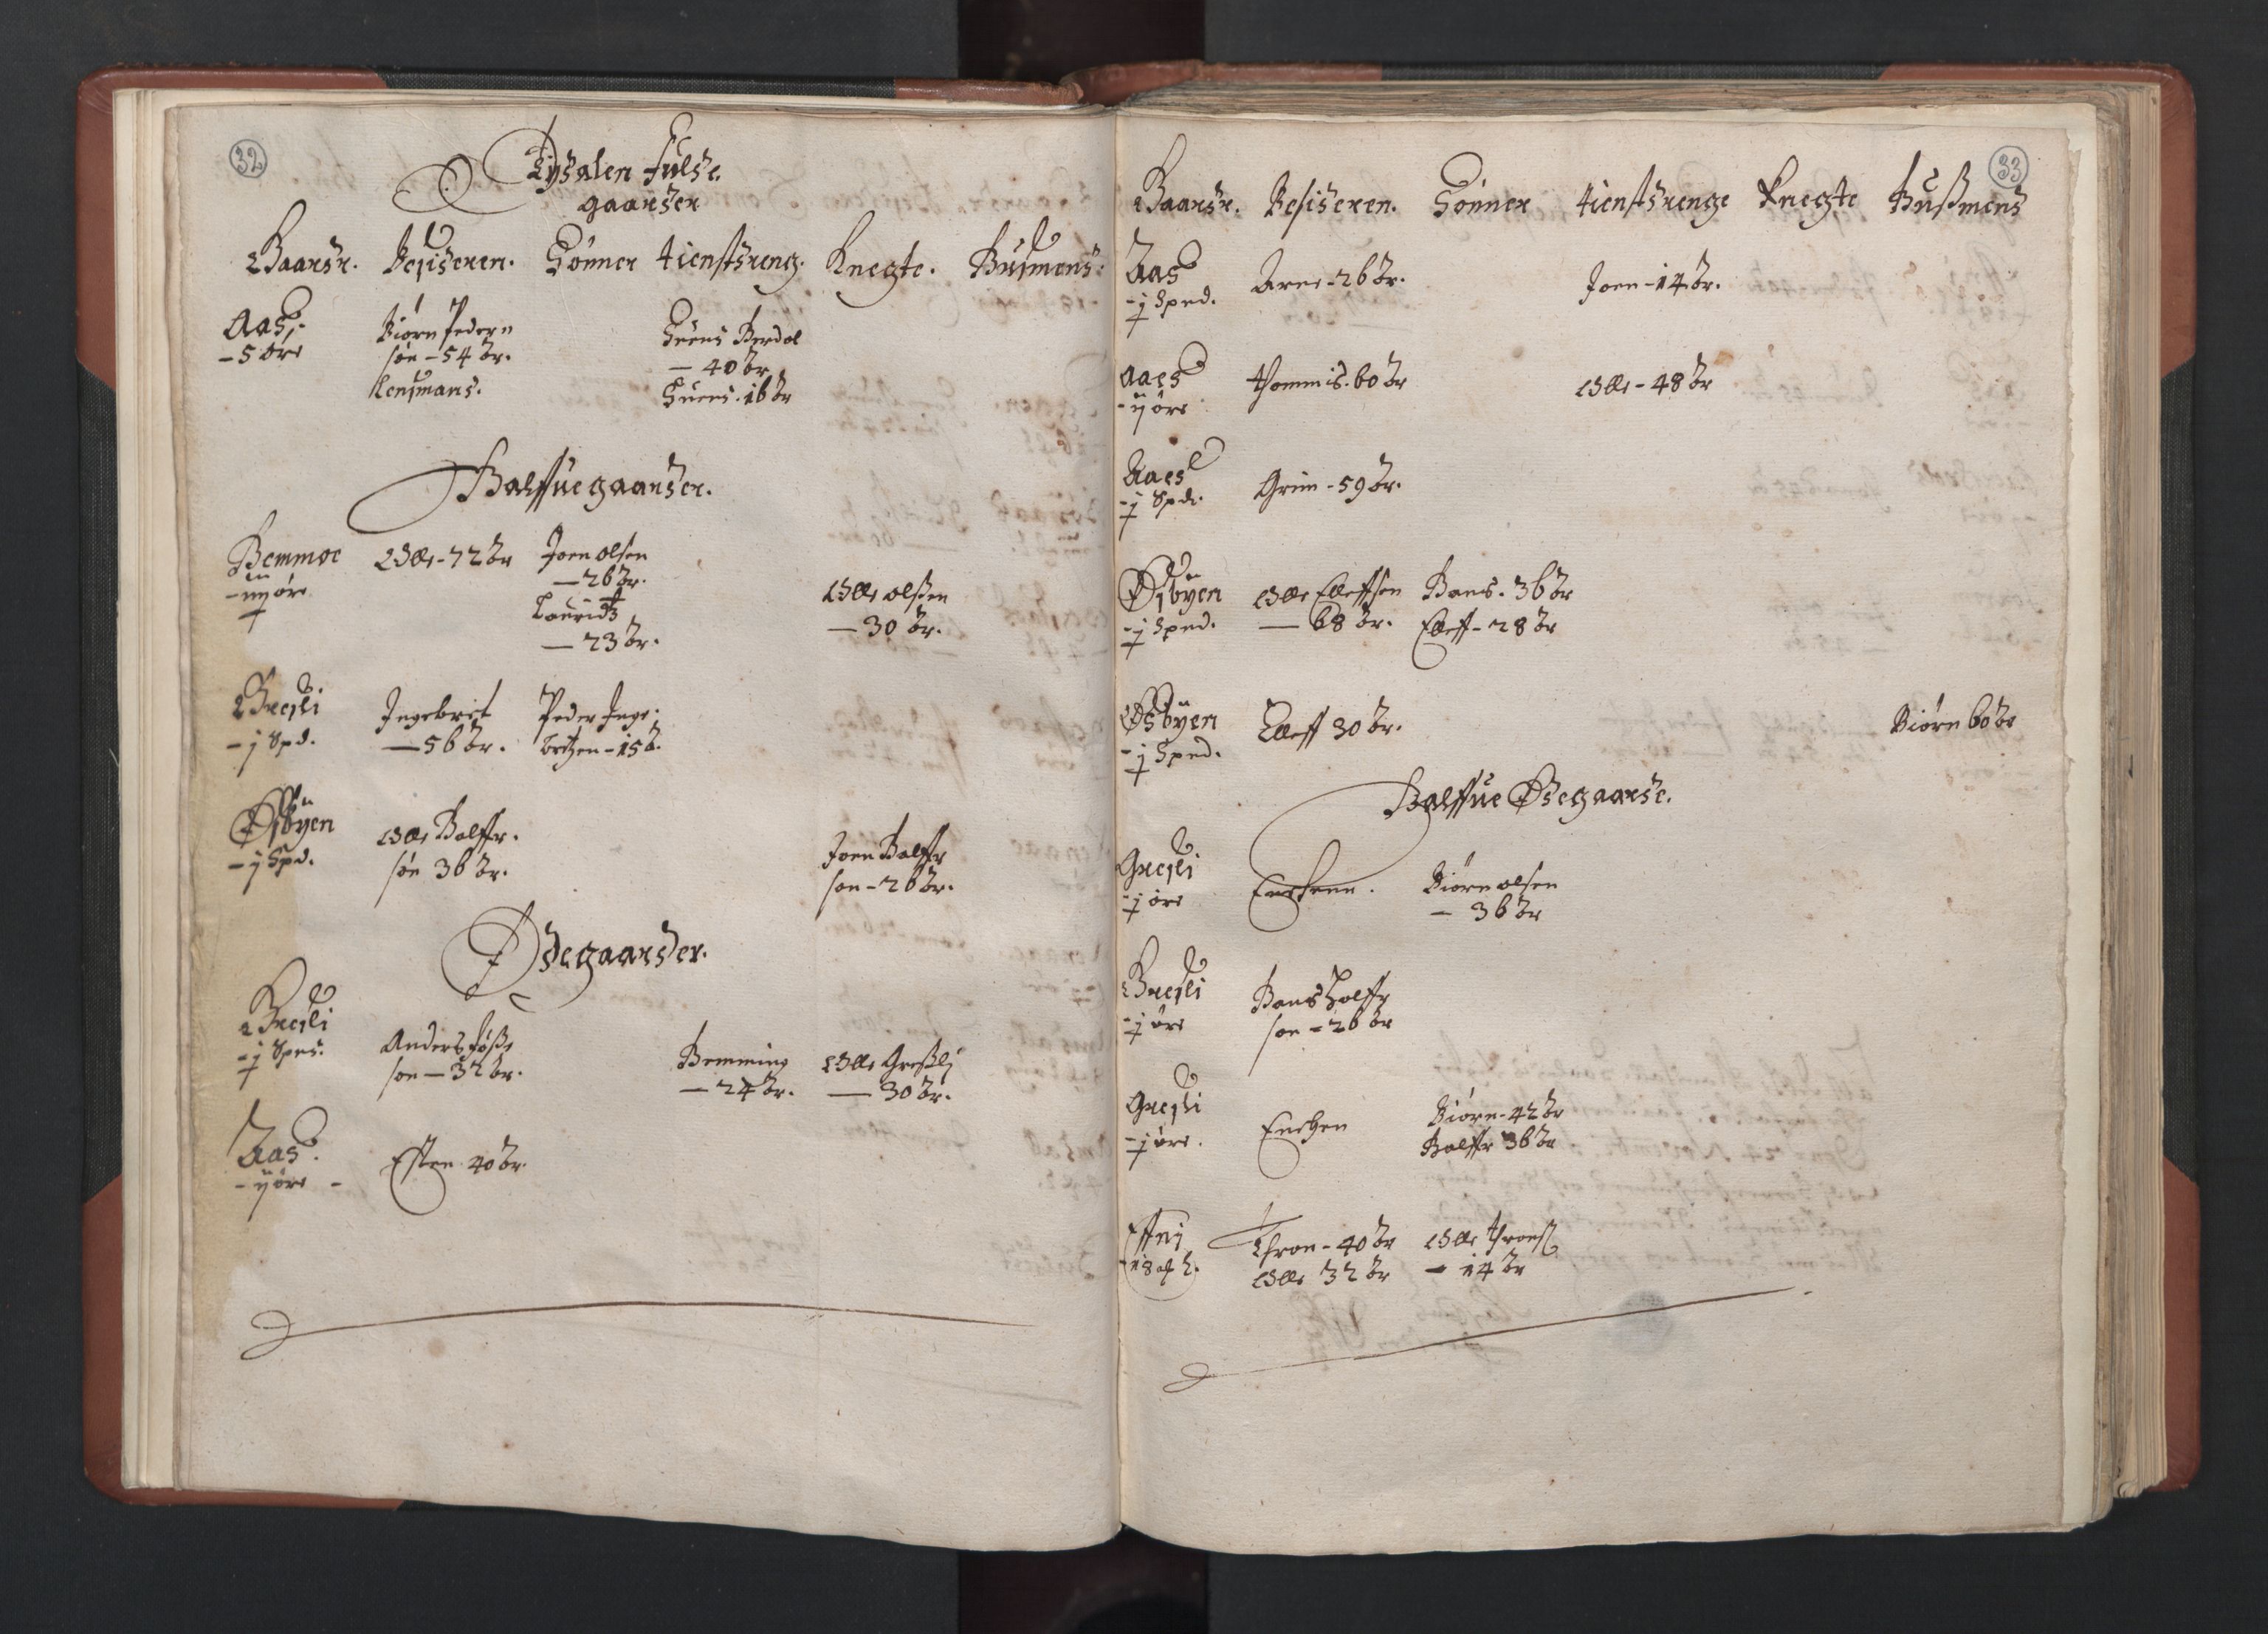 RA, Fogdenes og sorenskrivernes manntall 1664-1666, nr. 19: Fosen fogderi, Inderøy fogderi, Selbu fogderi, Namdal fogderi og Stjørdal fogderi, 1664-1665, s. 32-33